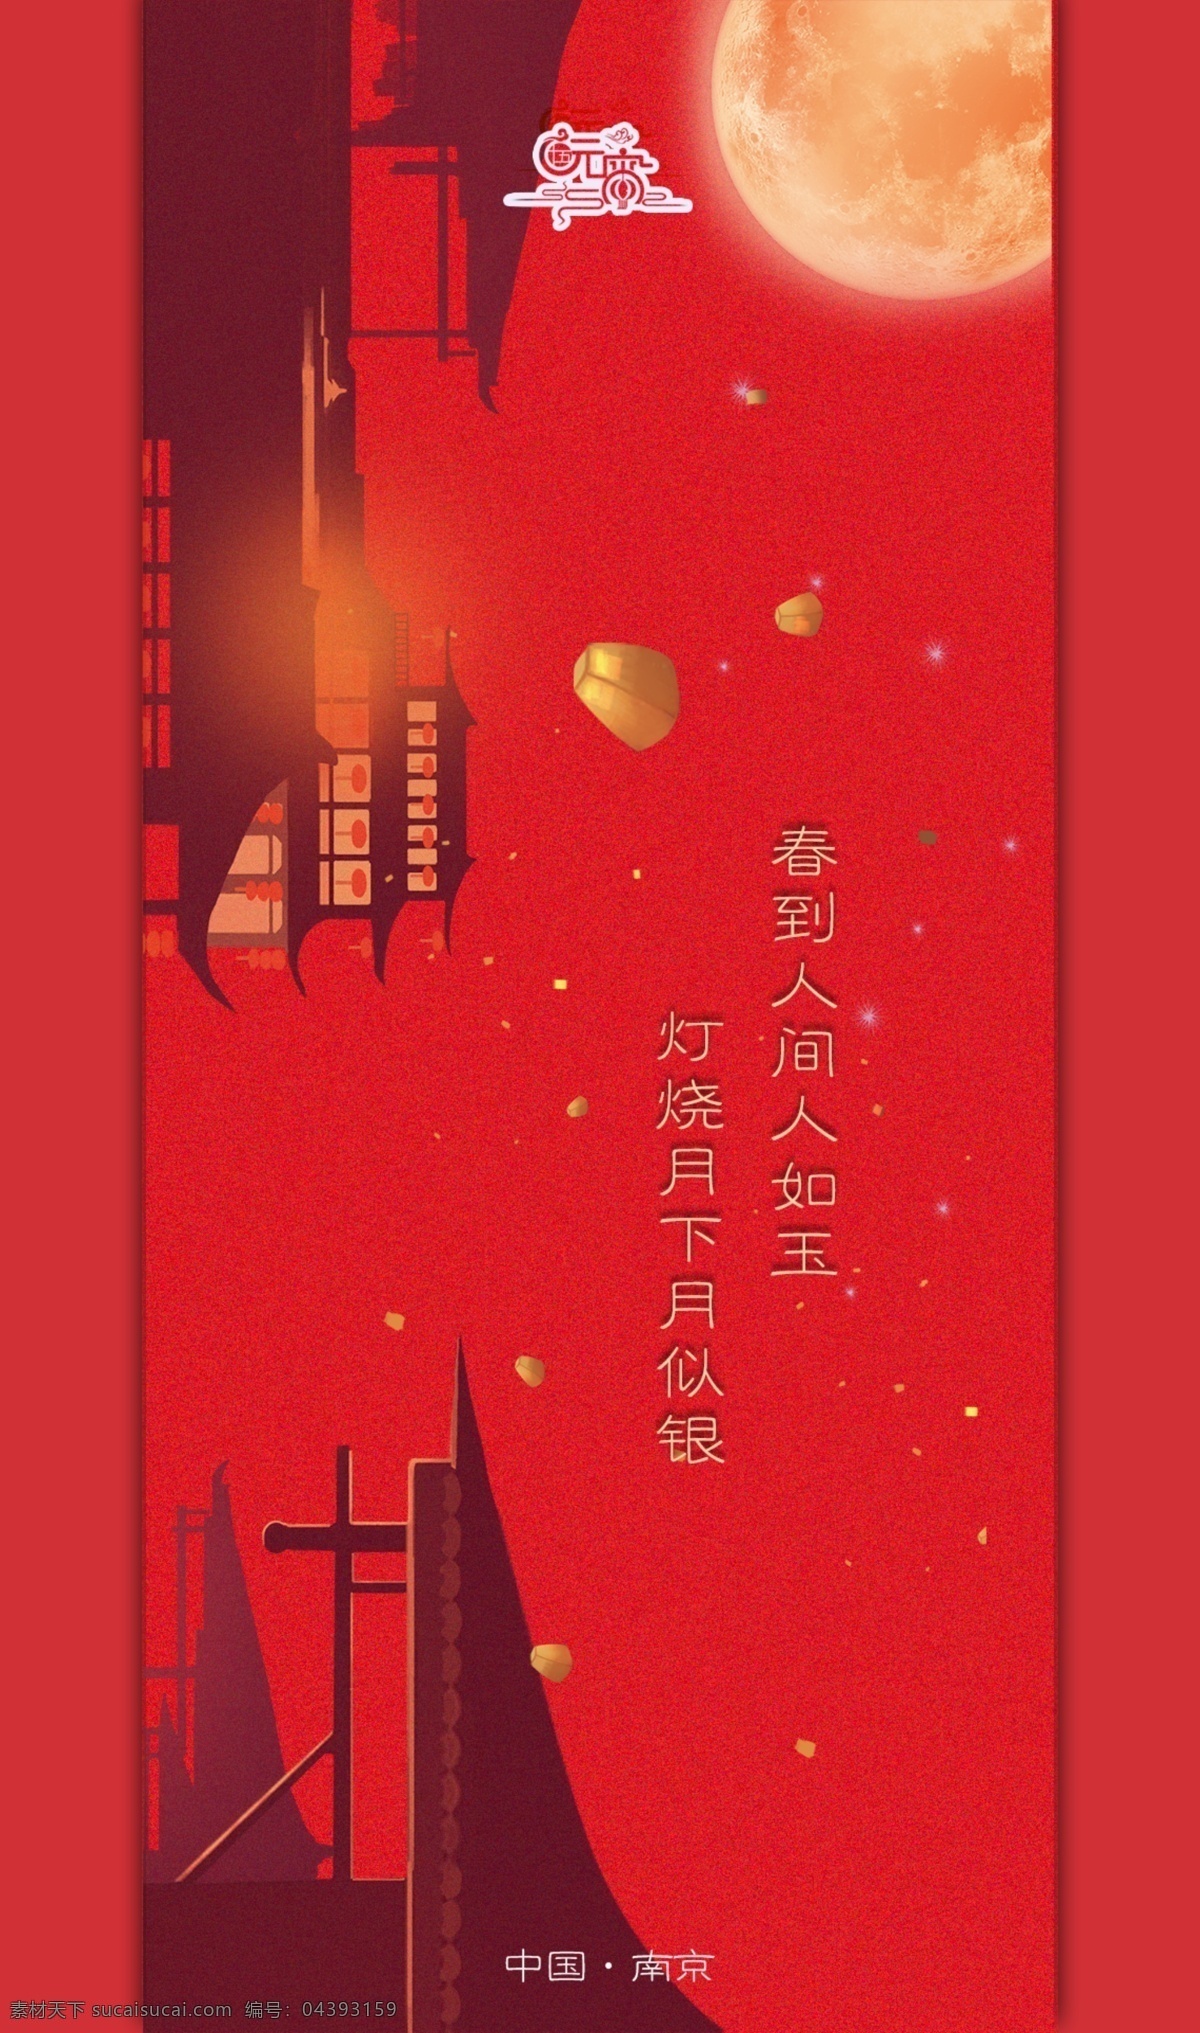 元宵节 红色 投影 古建筑 创意 海报